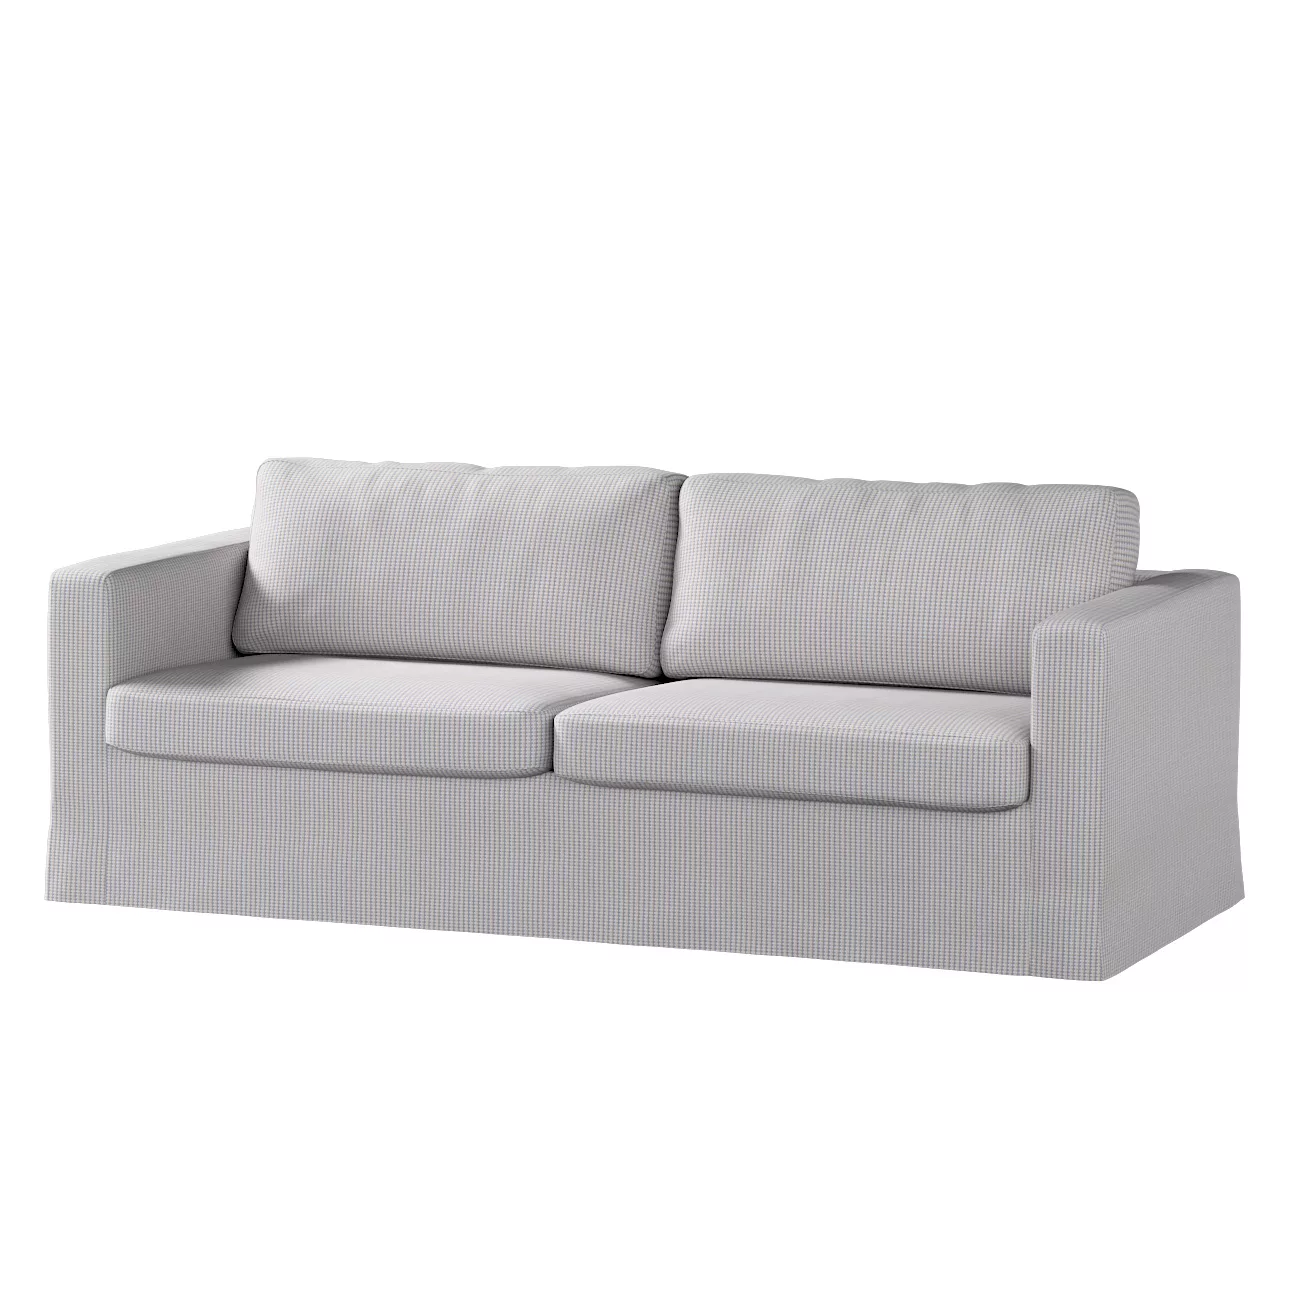 Bezug für Karlstad 3-Sitzer Sofa nicht ausklappbar, lang, beige-blau, Bezug günstig online kaufen